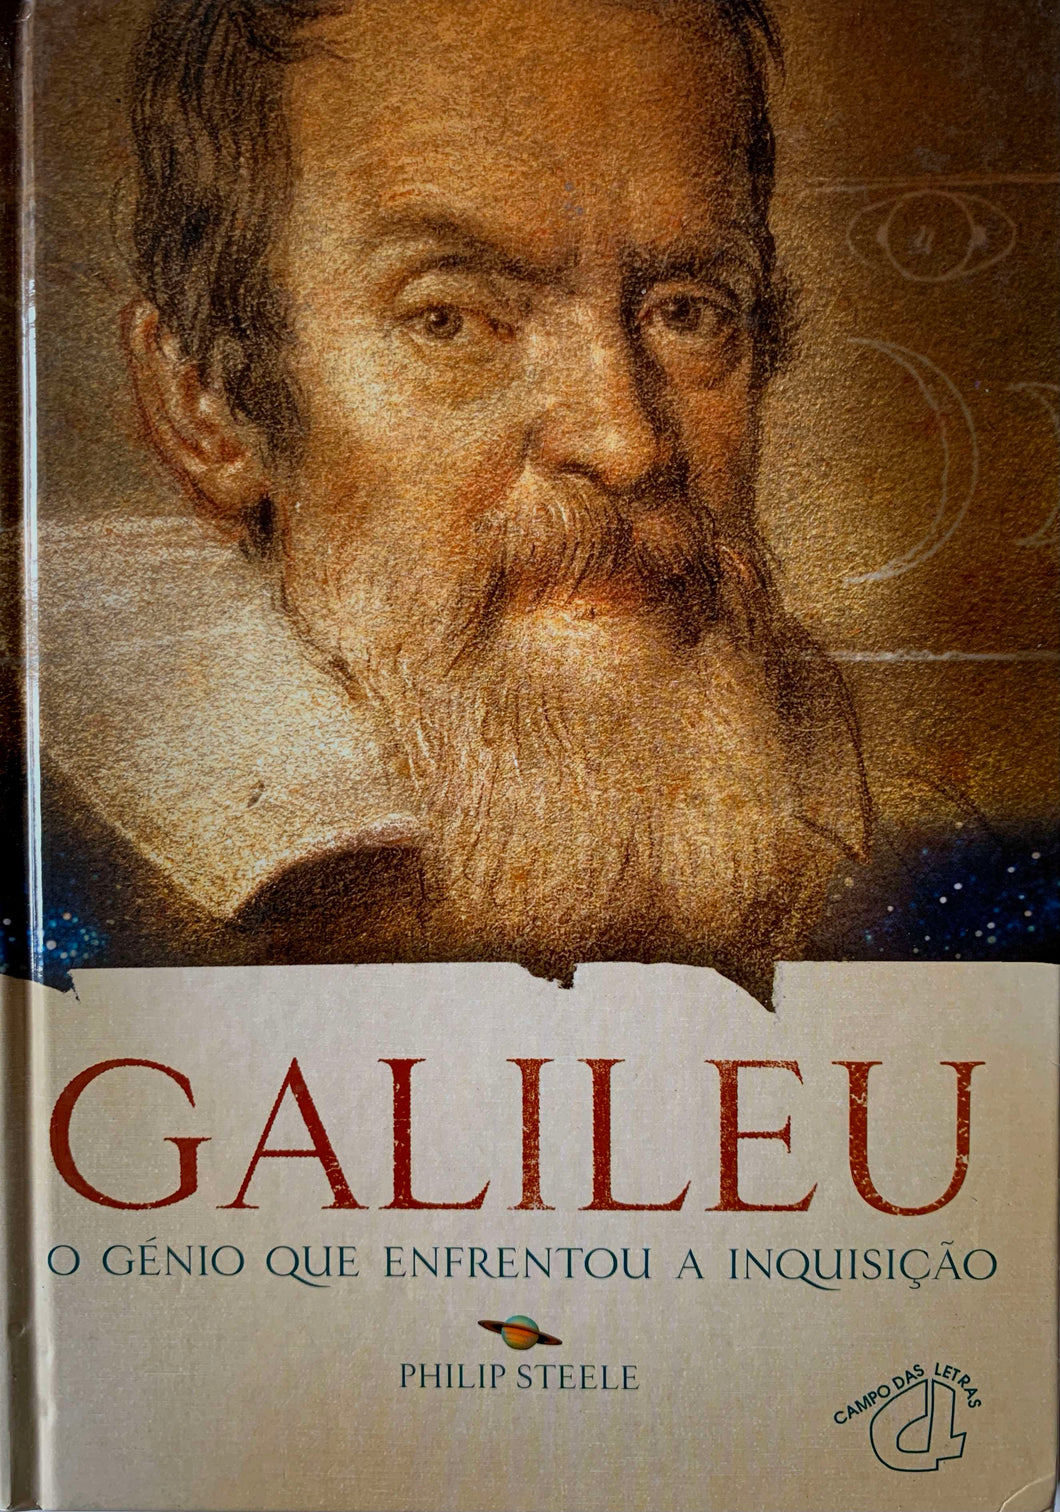 Galileu: O Génio Que Enfrentou a Inquisição